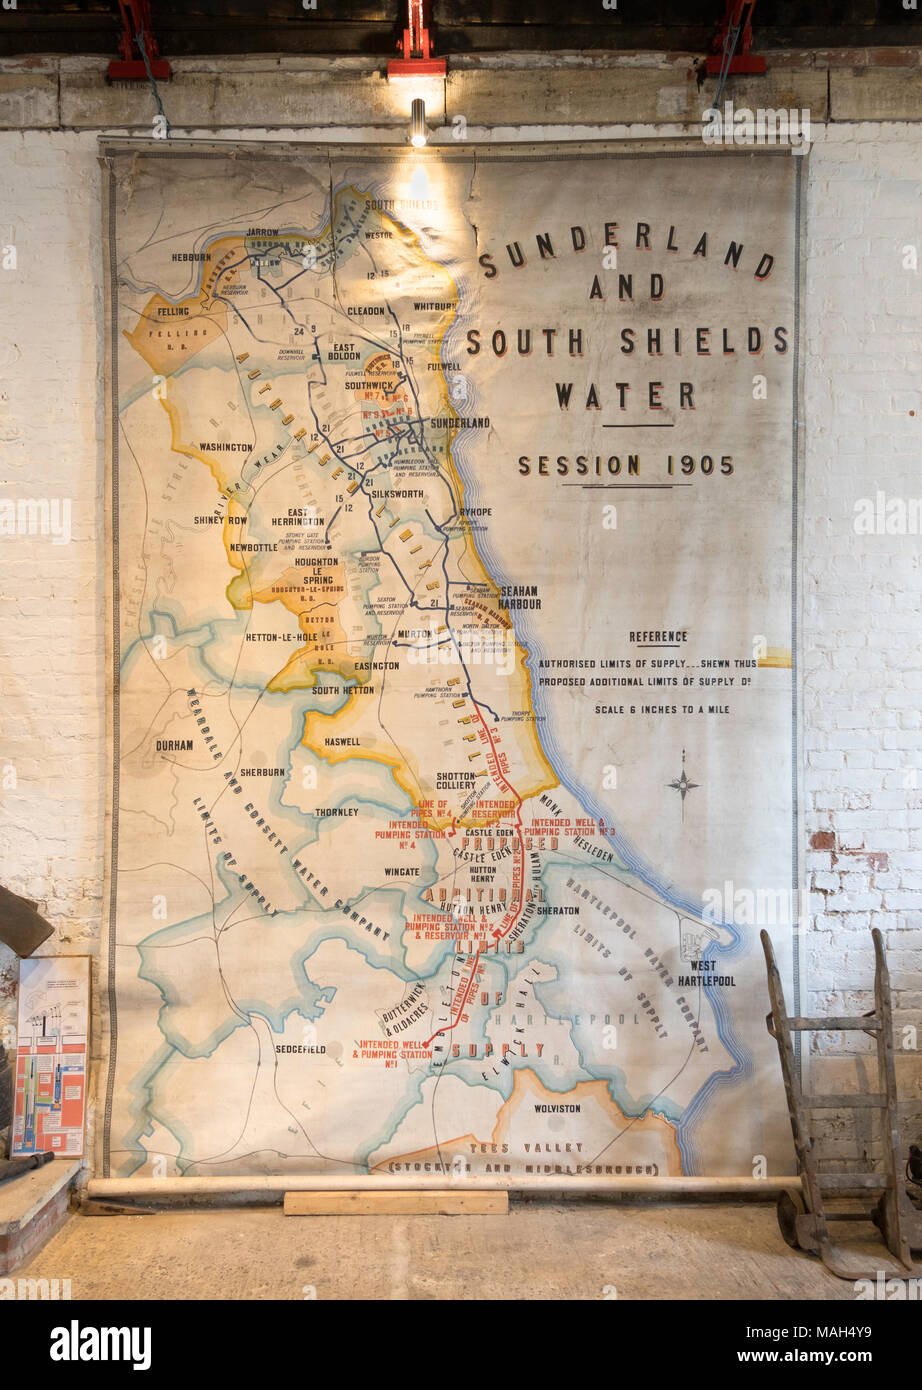 Sunderland et South Shields entreprise Plan d'eau à partir de 1905, les moteurs de Ryhope museum, Sunderland, Angleterre, RU Banque D'Images